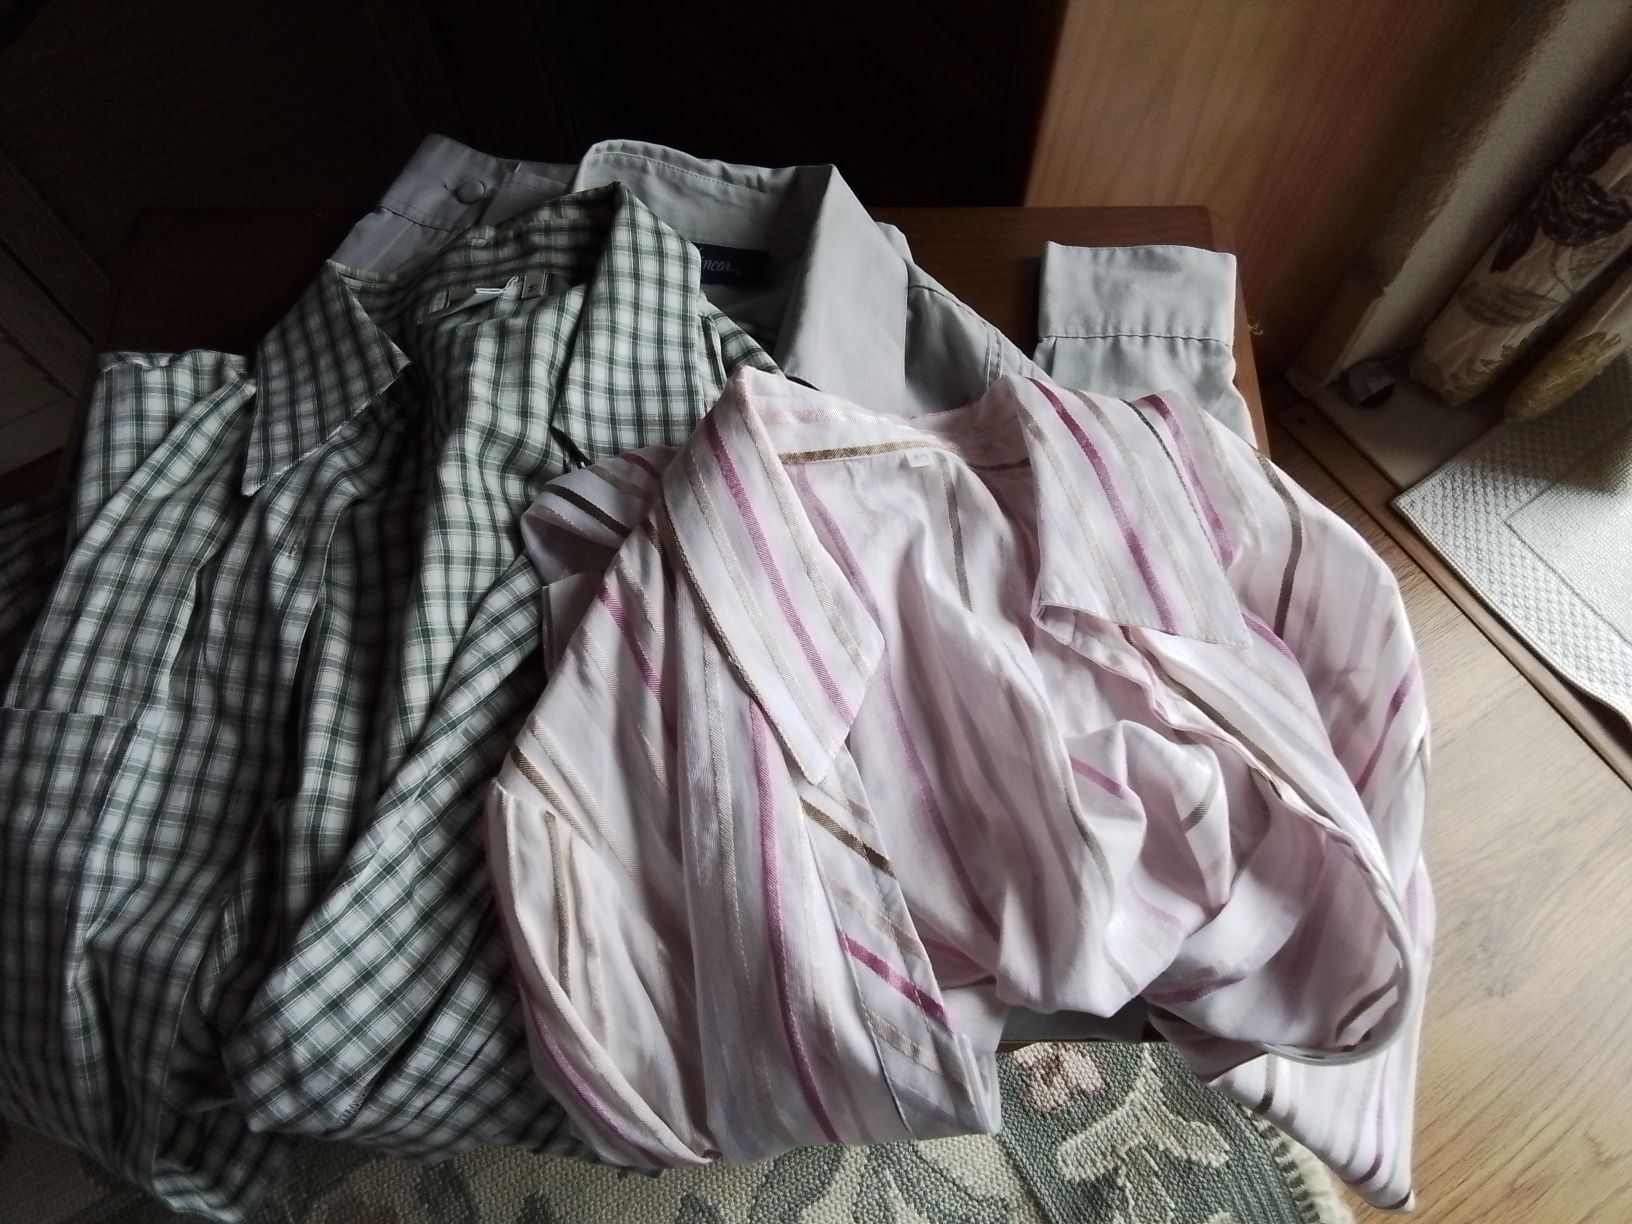 Blusas e camisas